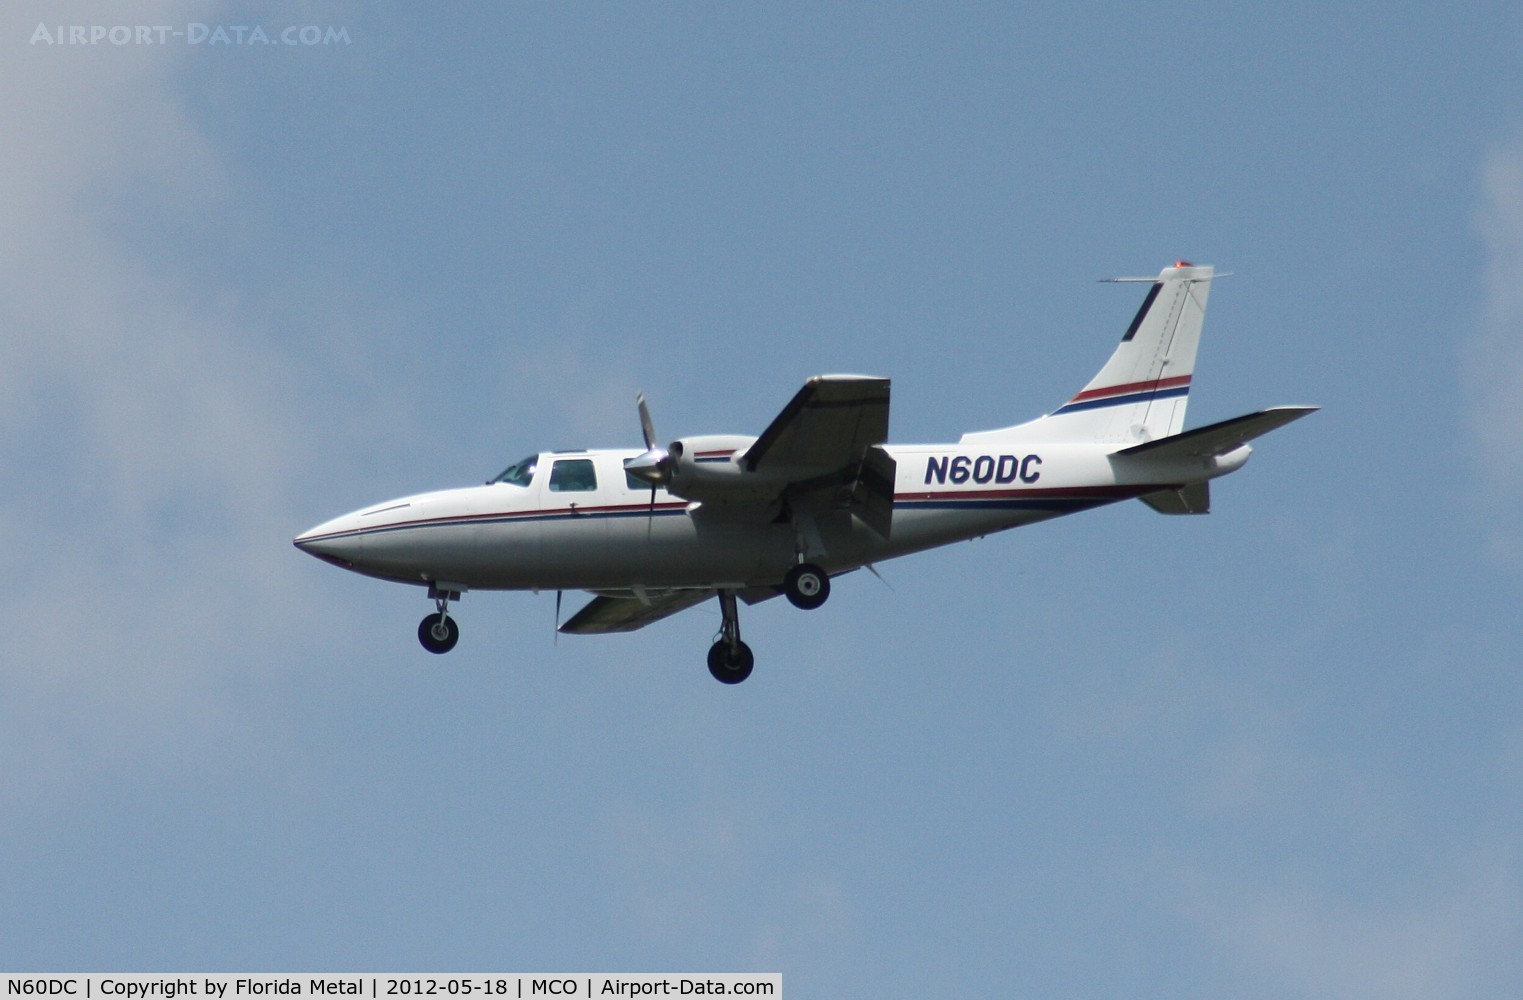 N60DC, 1980 Piper Aerostar 600 C/N 6007978061234, Aerostar 600